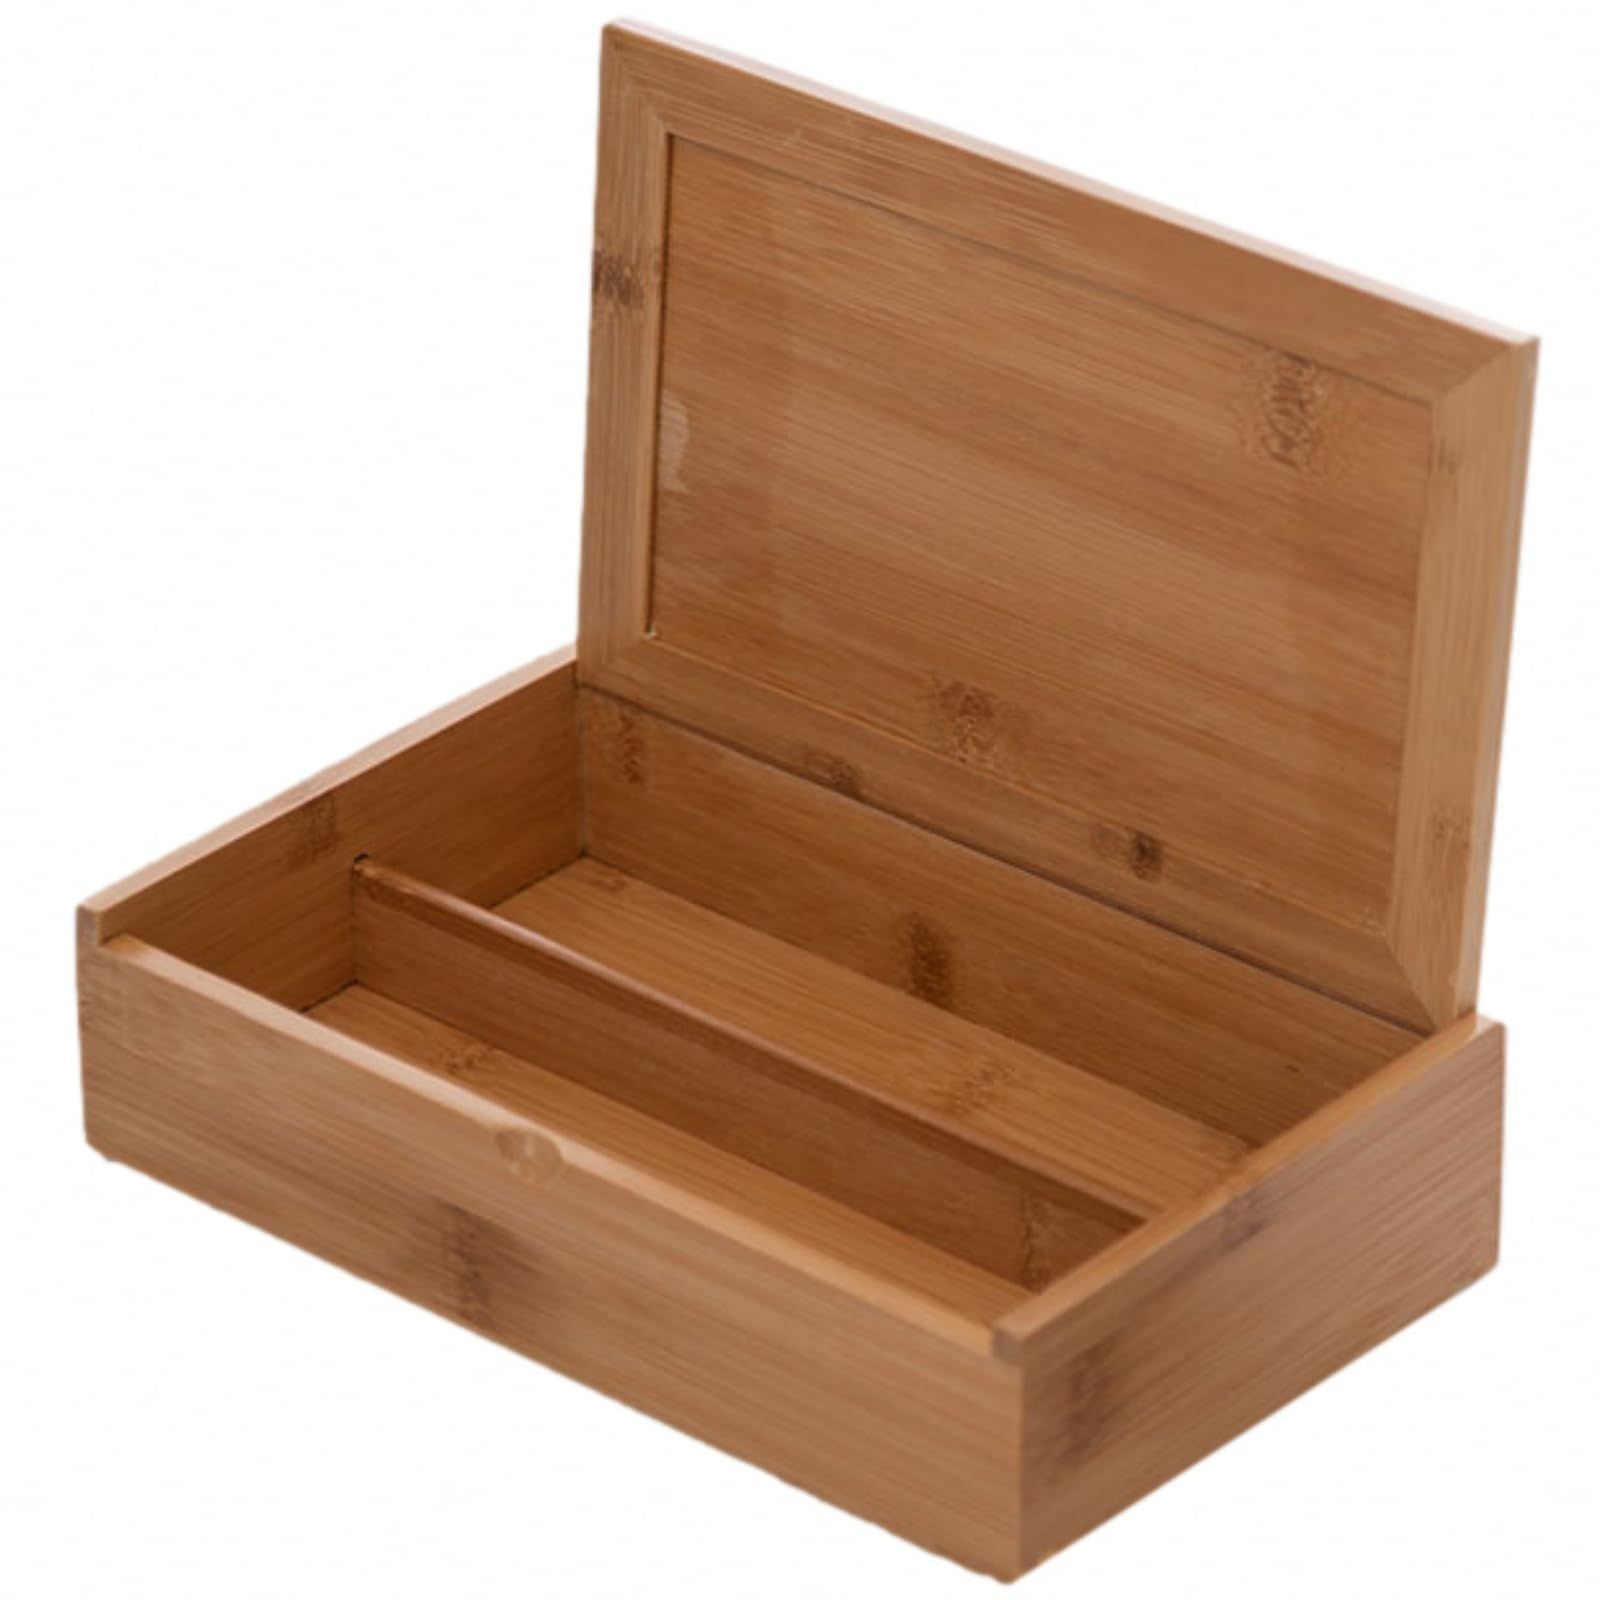 仕切り有り Sweet Plus 竹製ボックス 木箱 木製 蓋付き 収納ケース 小物入れ 収納盒 収納ボックス レトロ シンプル 整理箱 長方形  (仕切り有り) - メルカリ